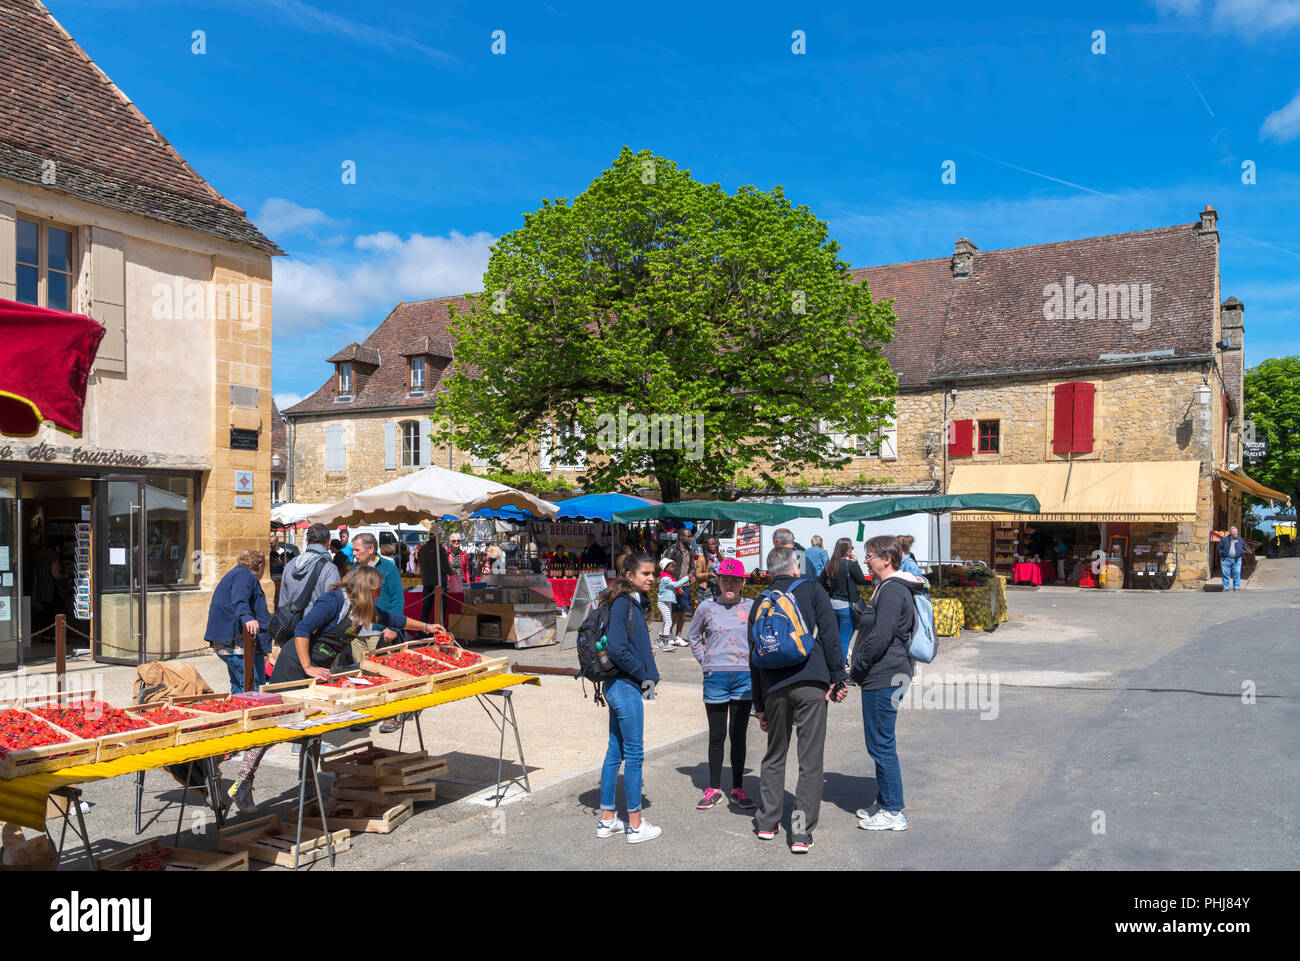 Sur le marché de tourisme Place de la Halle, de la vieille ville historique de Domme, Dordogne, France Banque D'Images